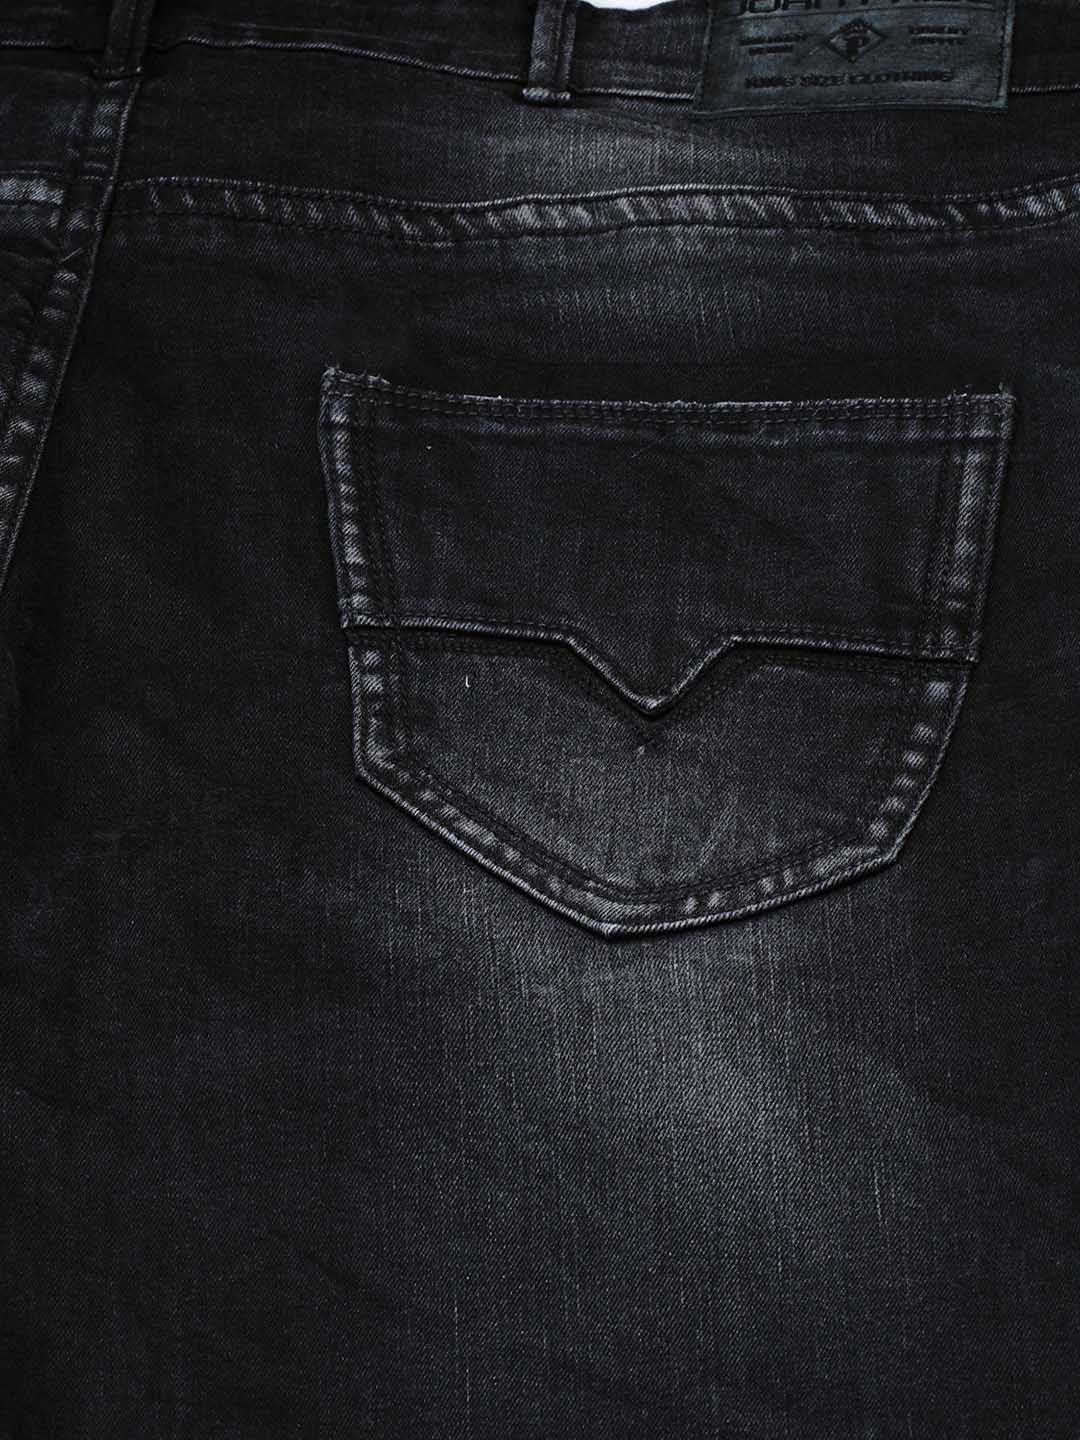 bottomwear/jeans/JPJ12129/jpj12129-5.jpg